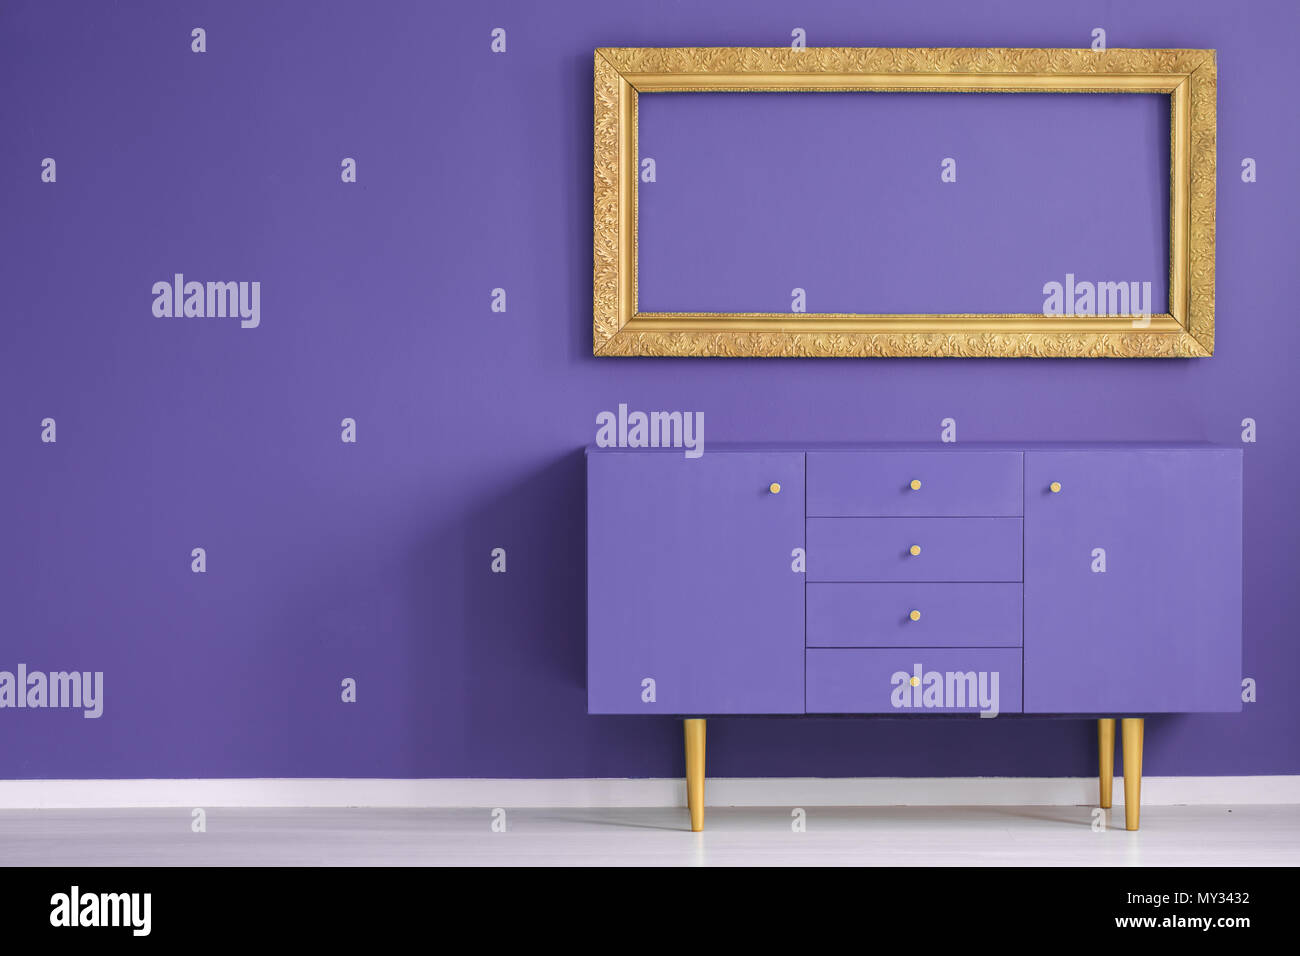 Immersive d'or cadre vide au-dessus du cabinet intérieur violet dans une antichambre avec copie espace Banque D'Images